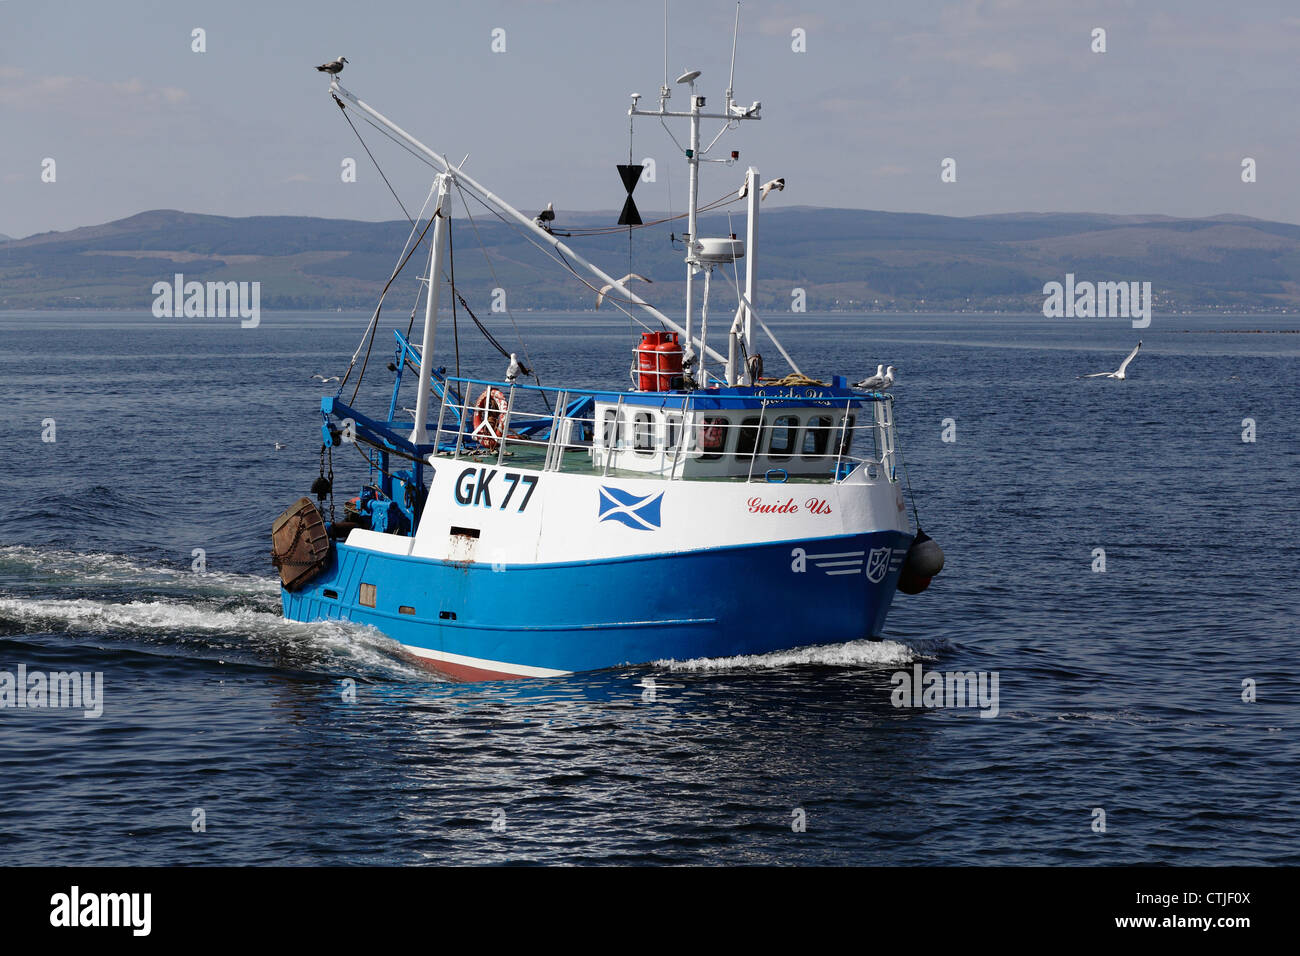 Petit bateau de pêche Guide nous naviguant au large de Largs dans le Firth de Clyde, North Ayrshire, Écosse, Royaume-Uni Banque D'Images